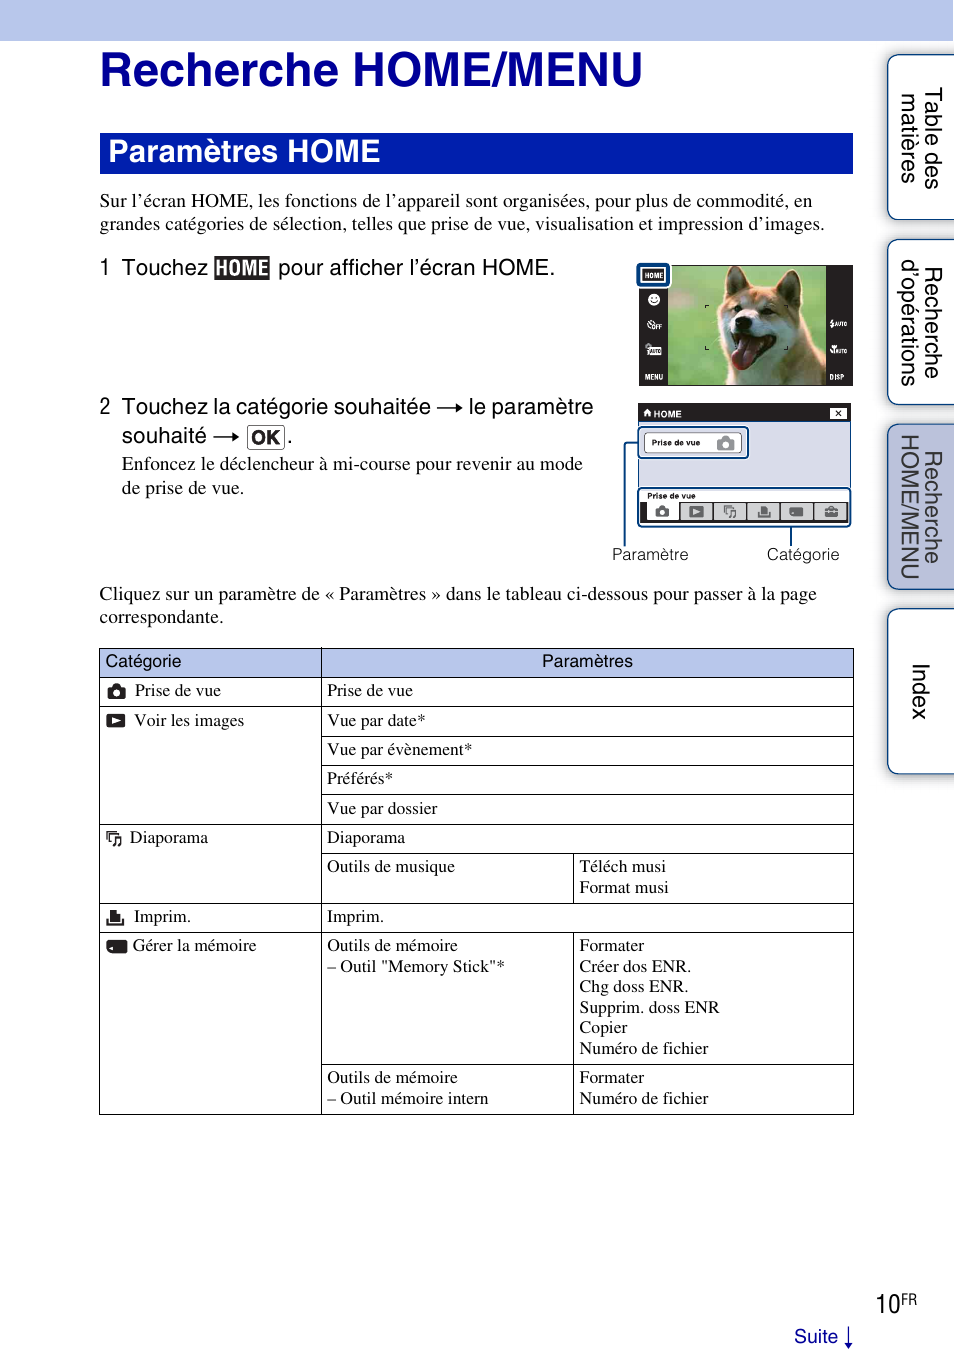 Recherche home/menu, Erche, Menu | Ch er, Home, Paramètres home | Sony DSC-T900 Manuel d'utilisation | Page 10 / 171